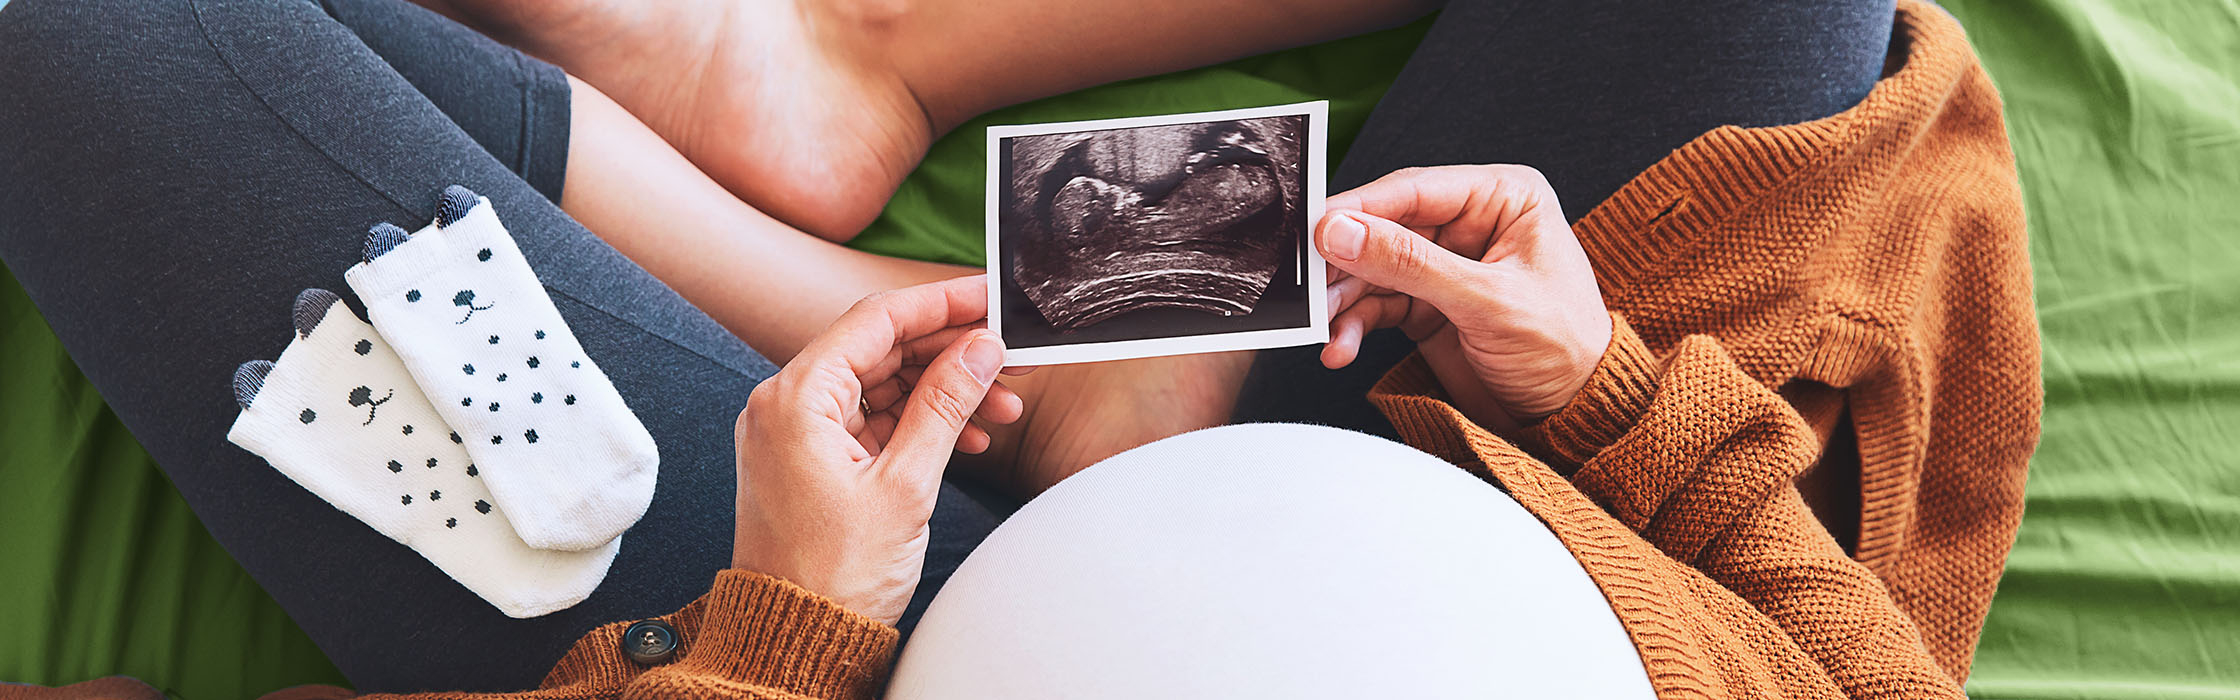 Une femme enceinte regarde une image ultrason de son bébé